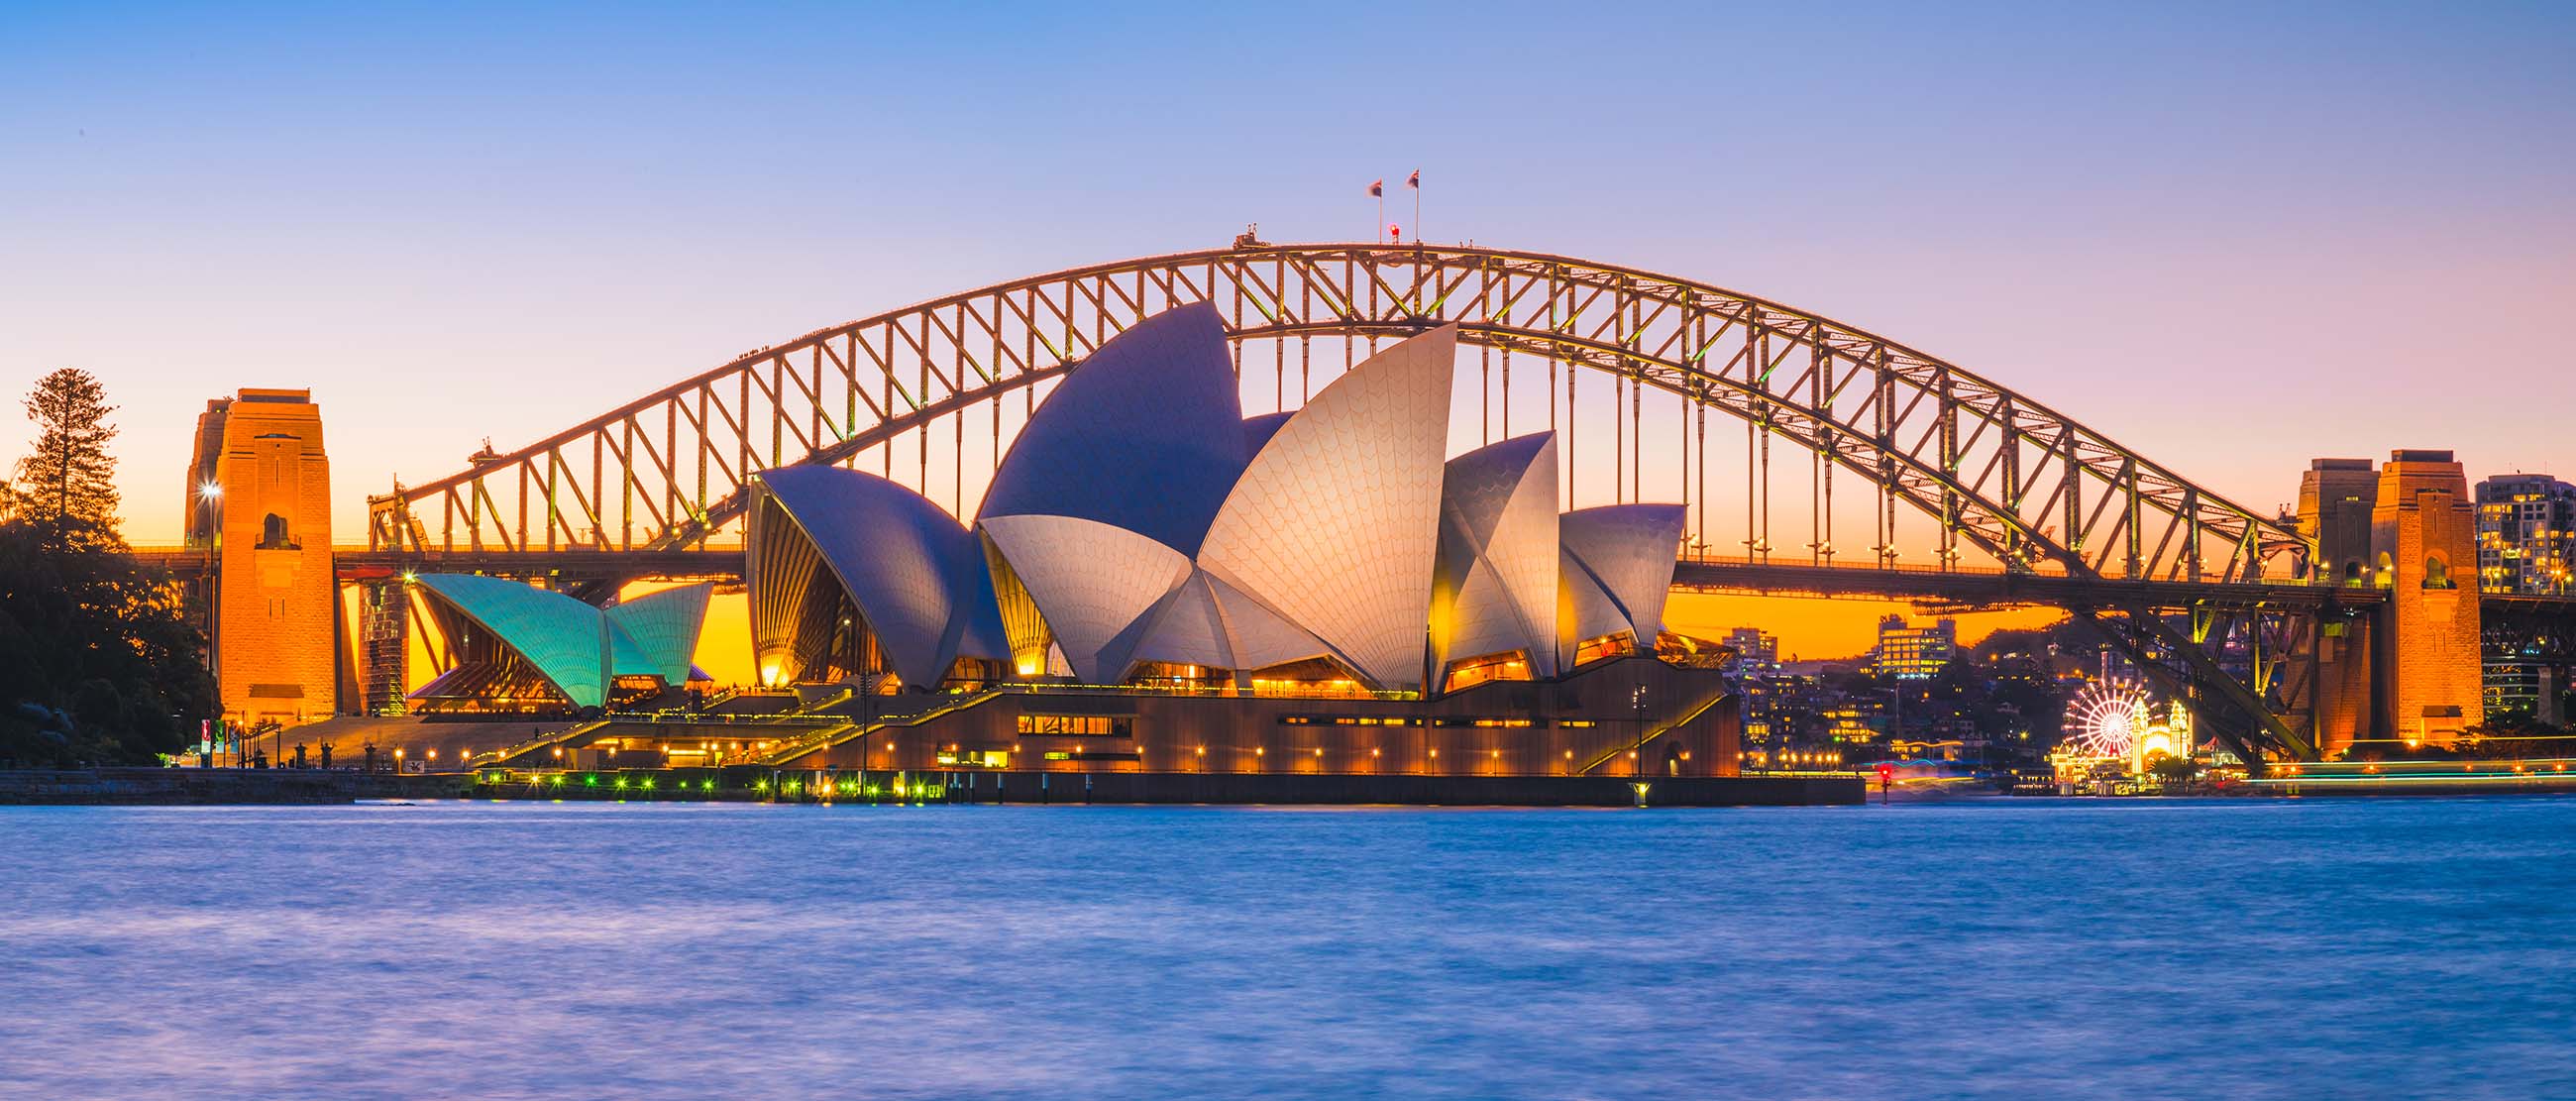 Nhà hát Sydney Opera House là 1 trong mỗi hình tượng của thành phố Hồ Chí Minh Sydney